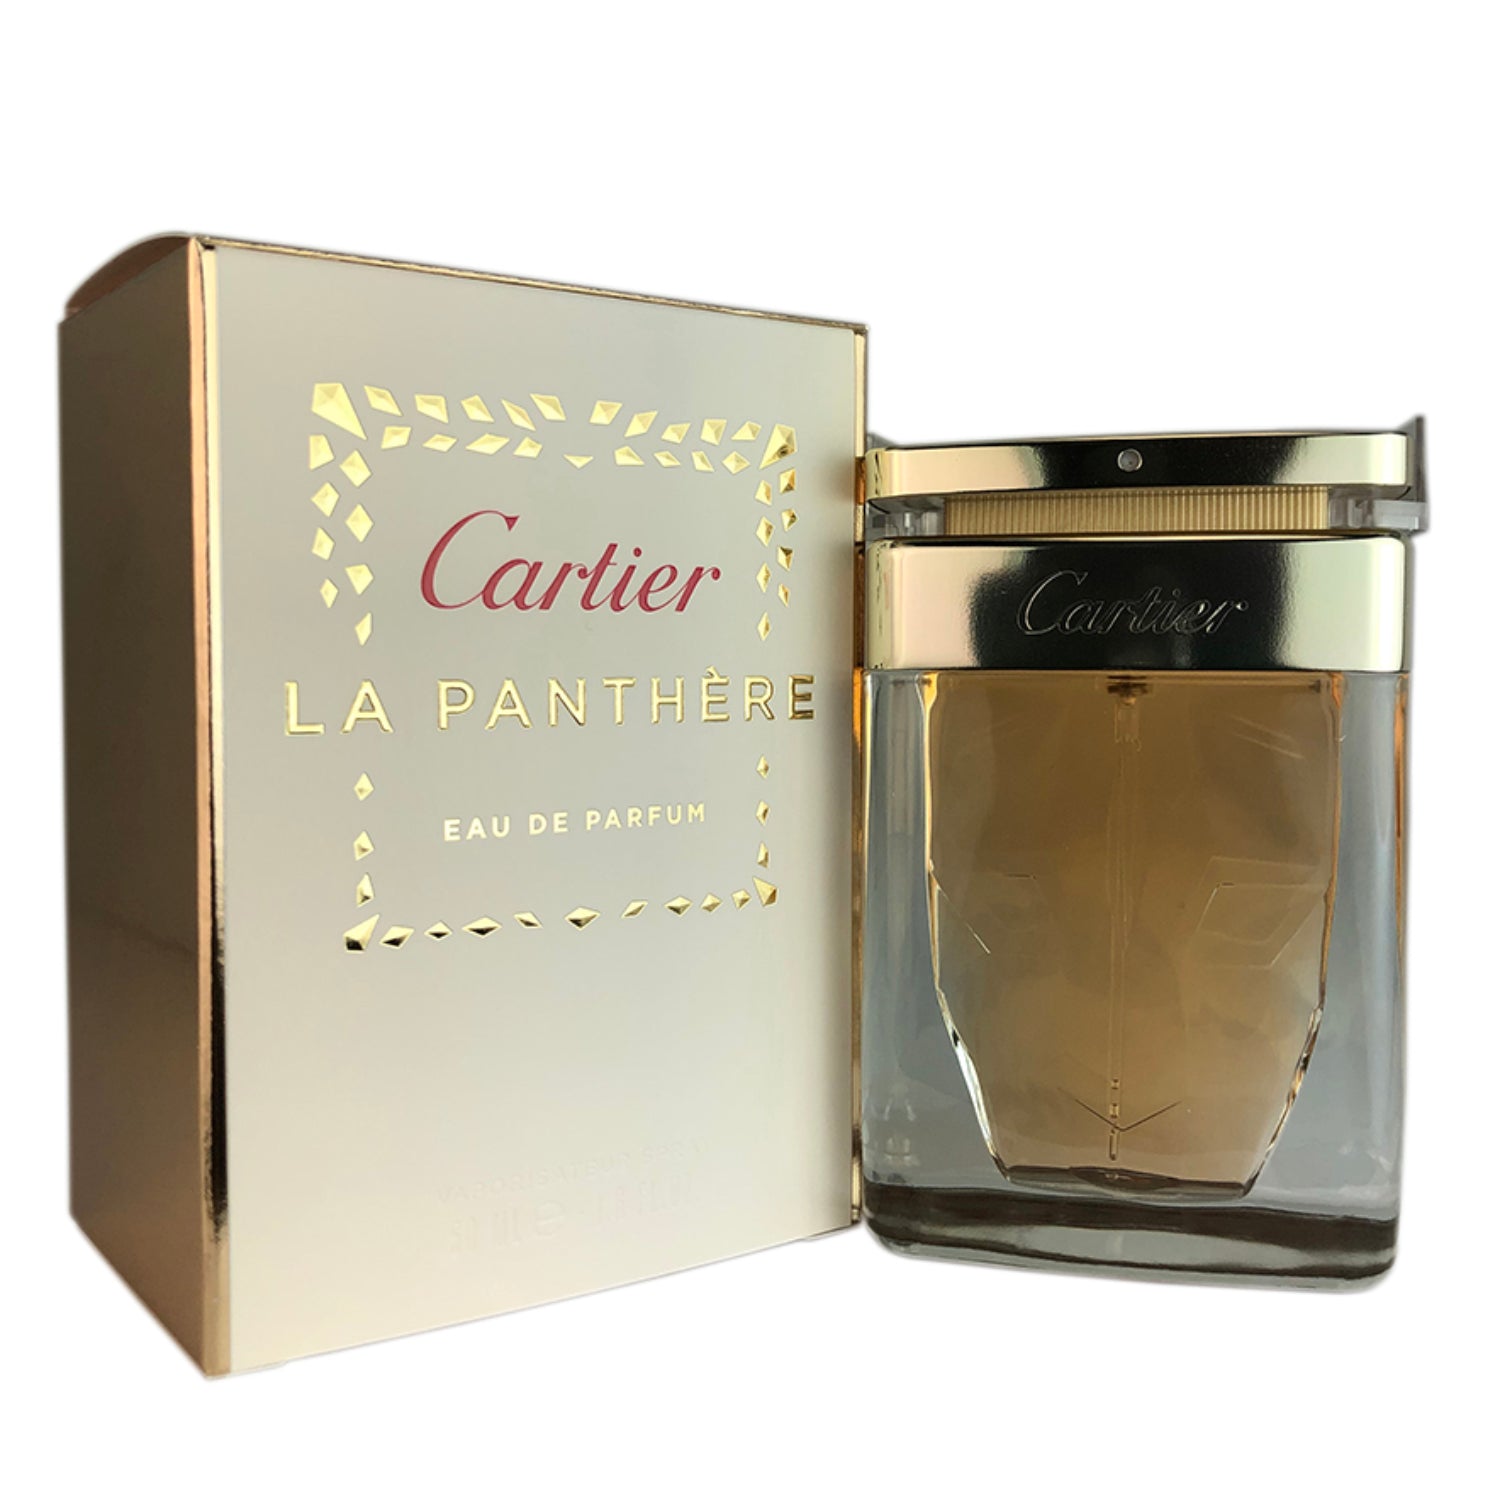 La Panthere for Women by Cartier 1.6 oz Eau de Parfum Spray